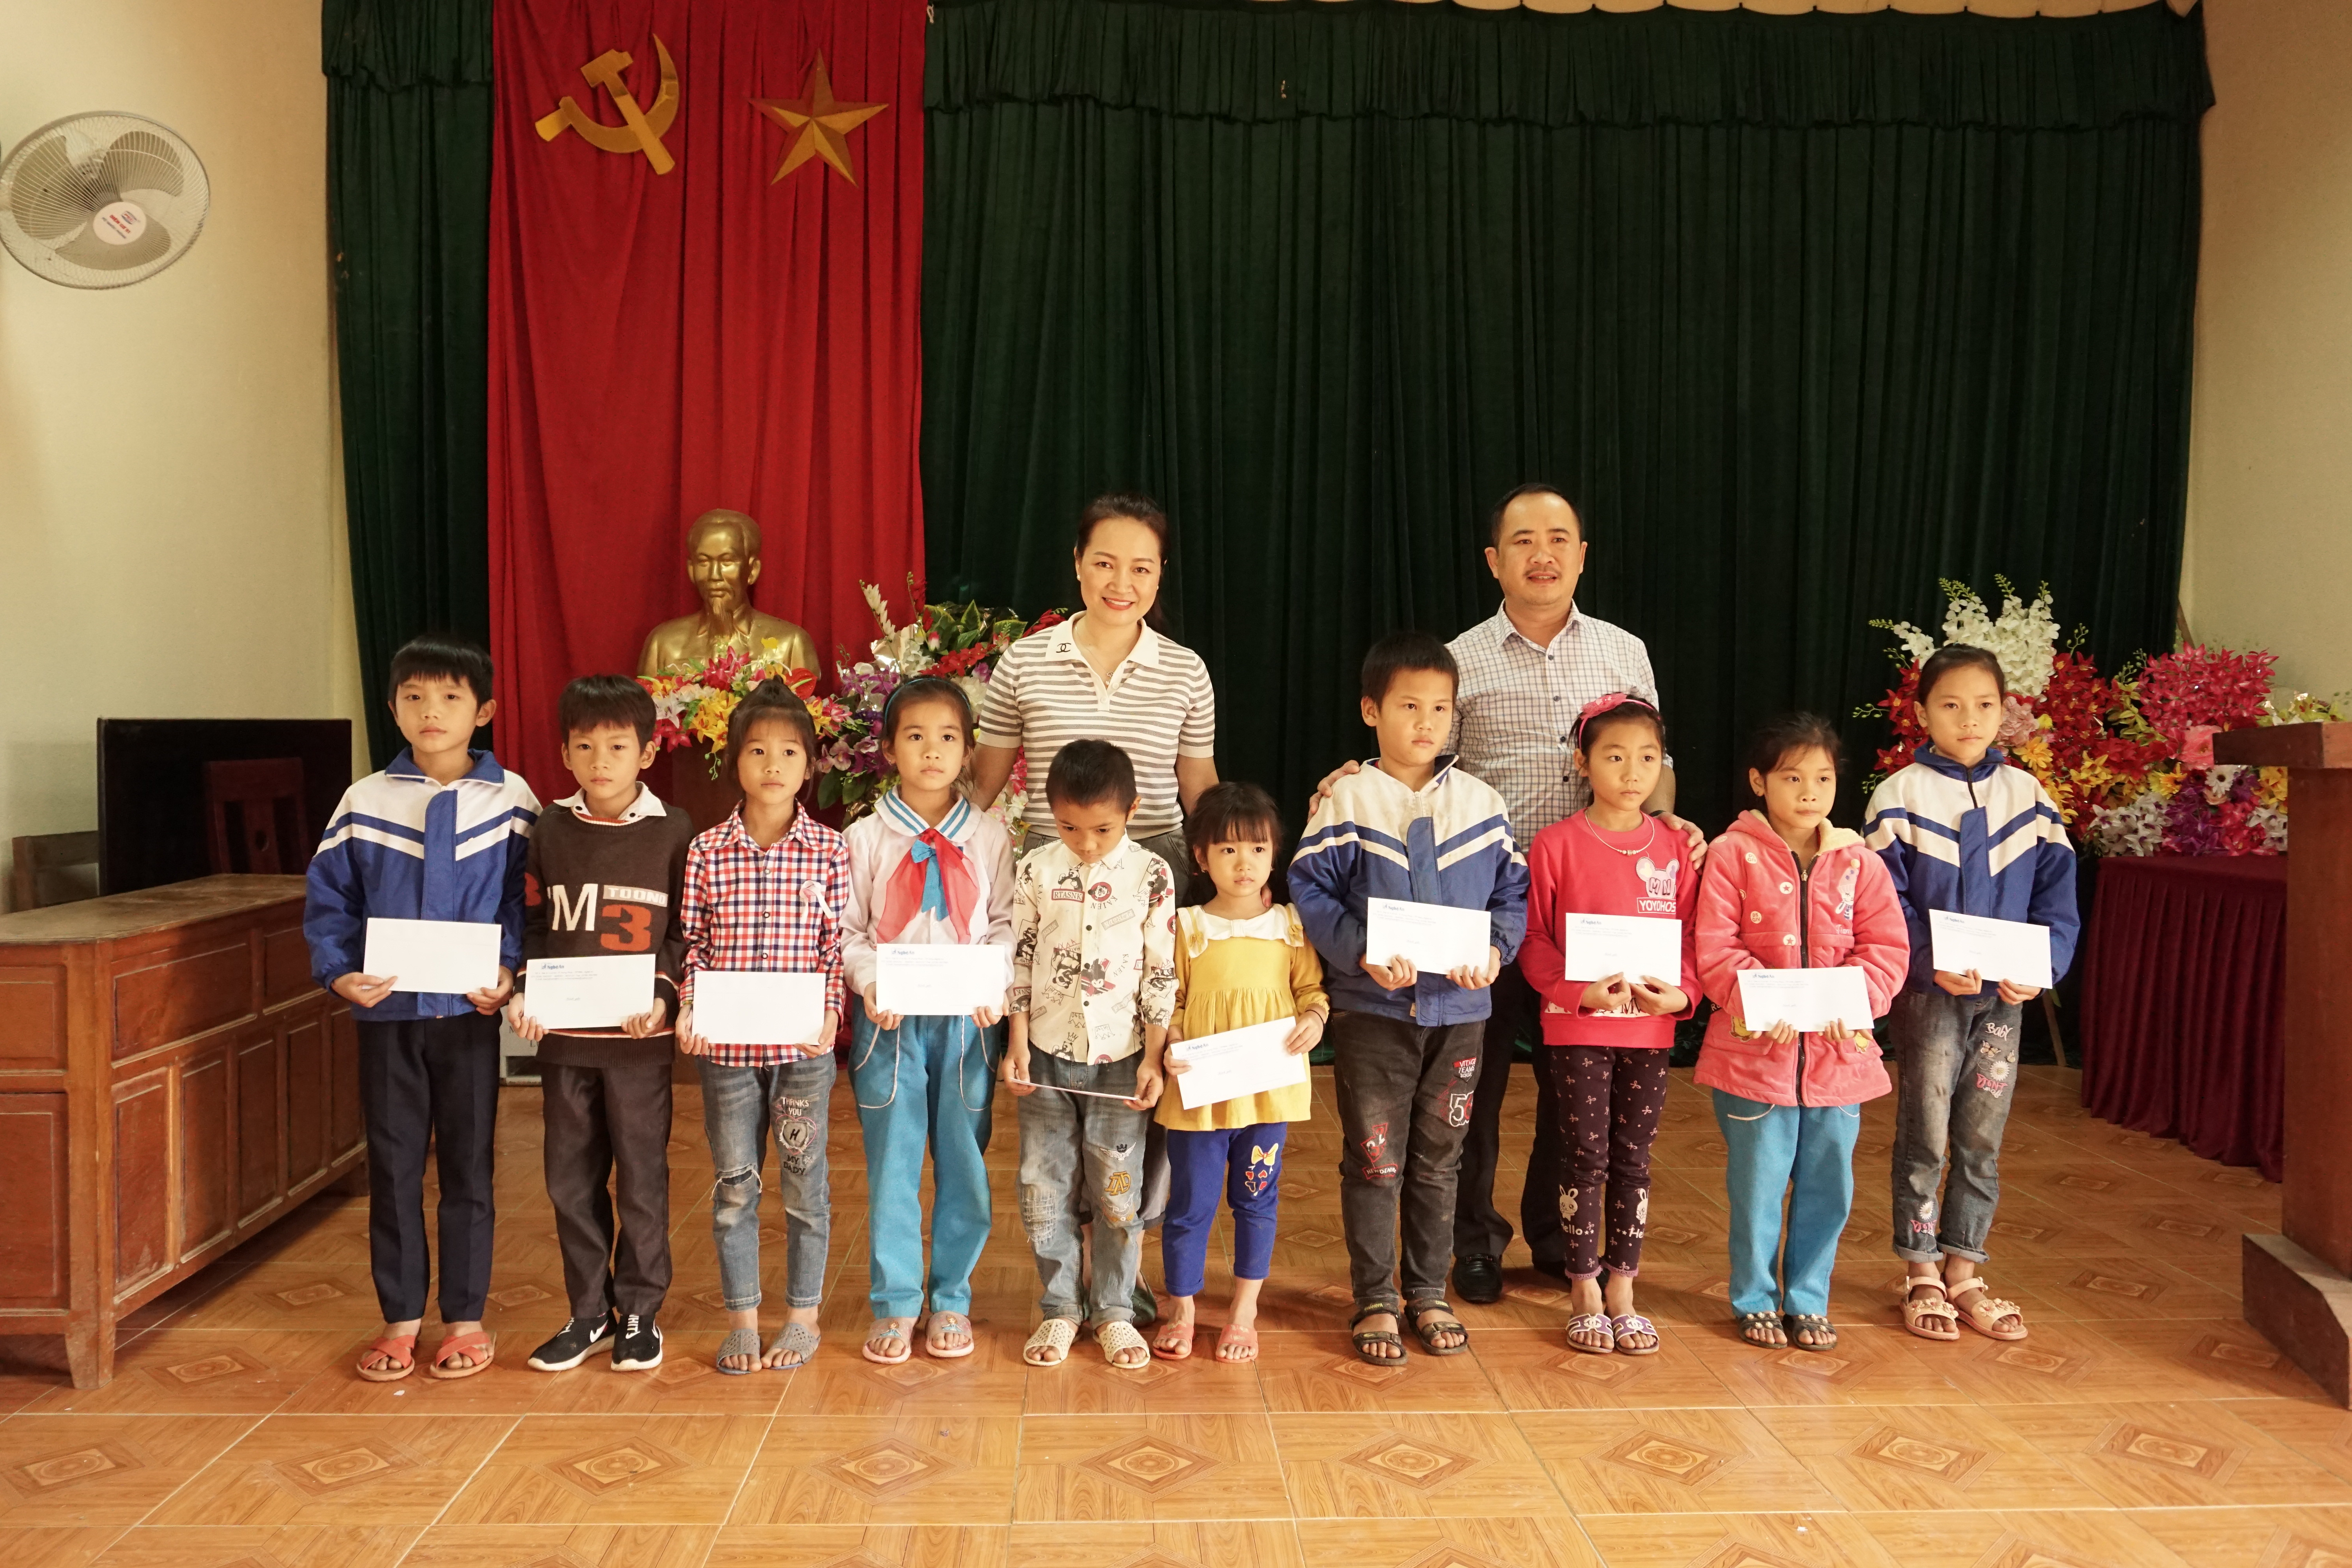 Dịp này, Báo Nghệ An phối hợp cùng Hội khuyến học tỉnh Nghệ An trao tặng 20 suất quà cho các em học sinh nghèo vượt khó vươn lên trên học tập. Ảnh: Tùng Linh